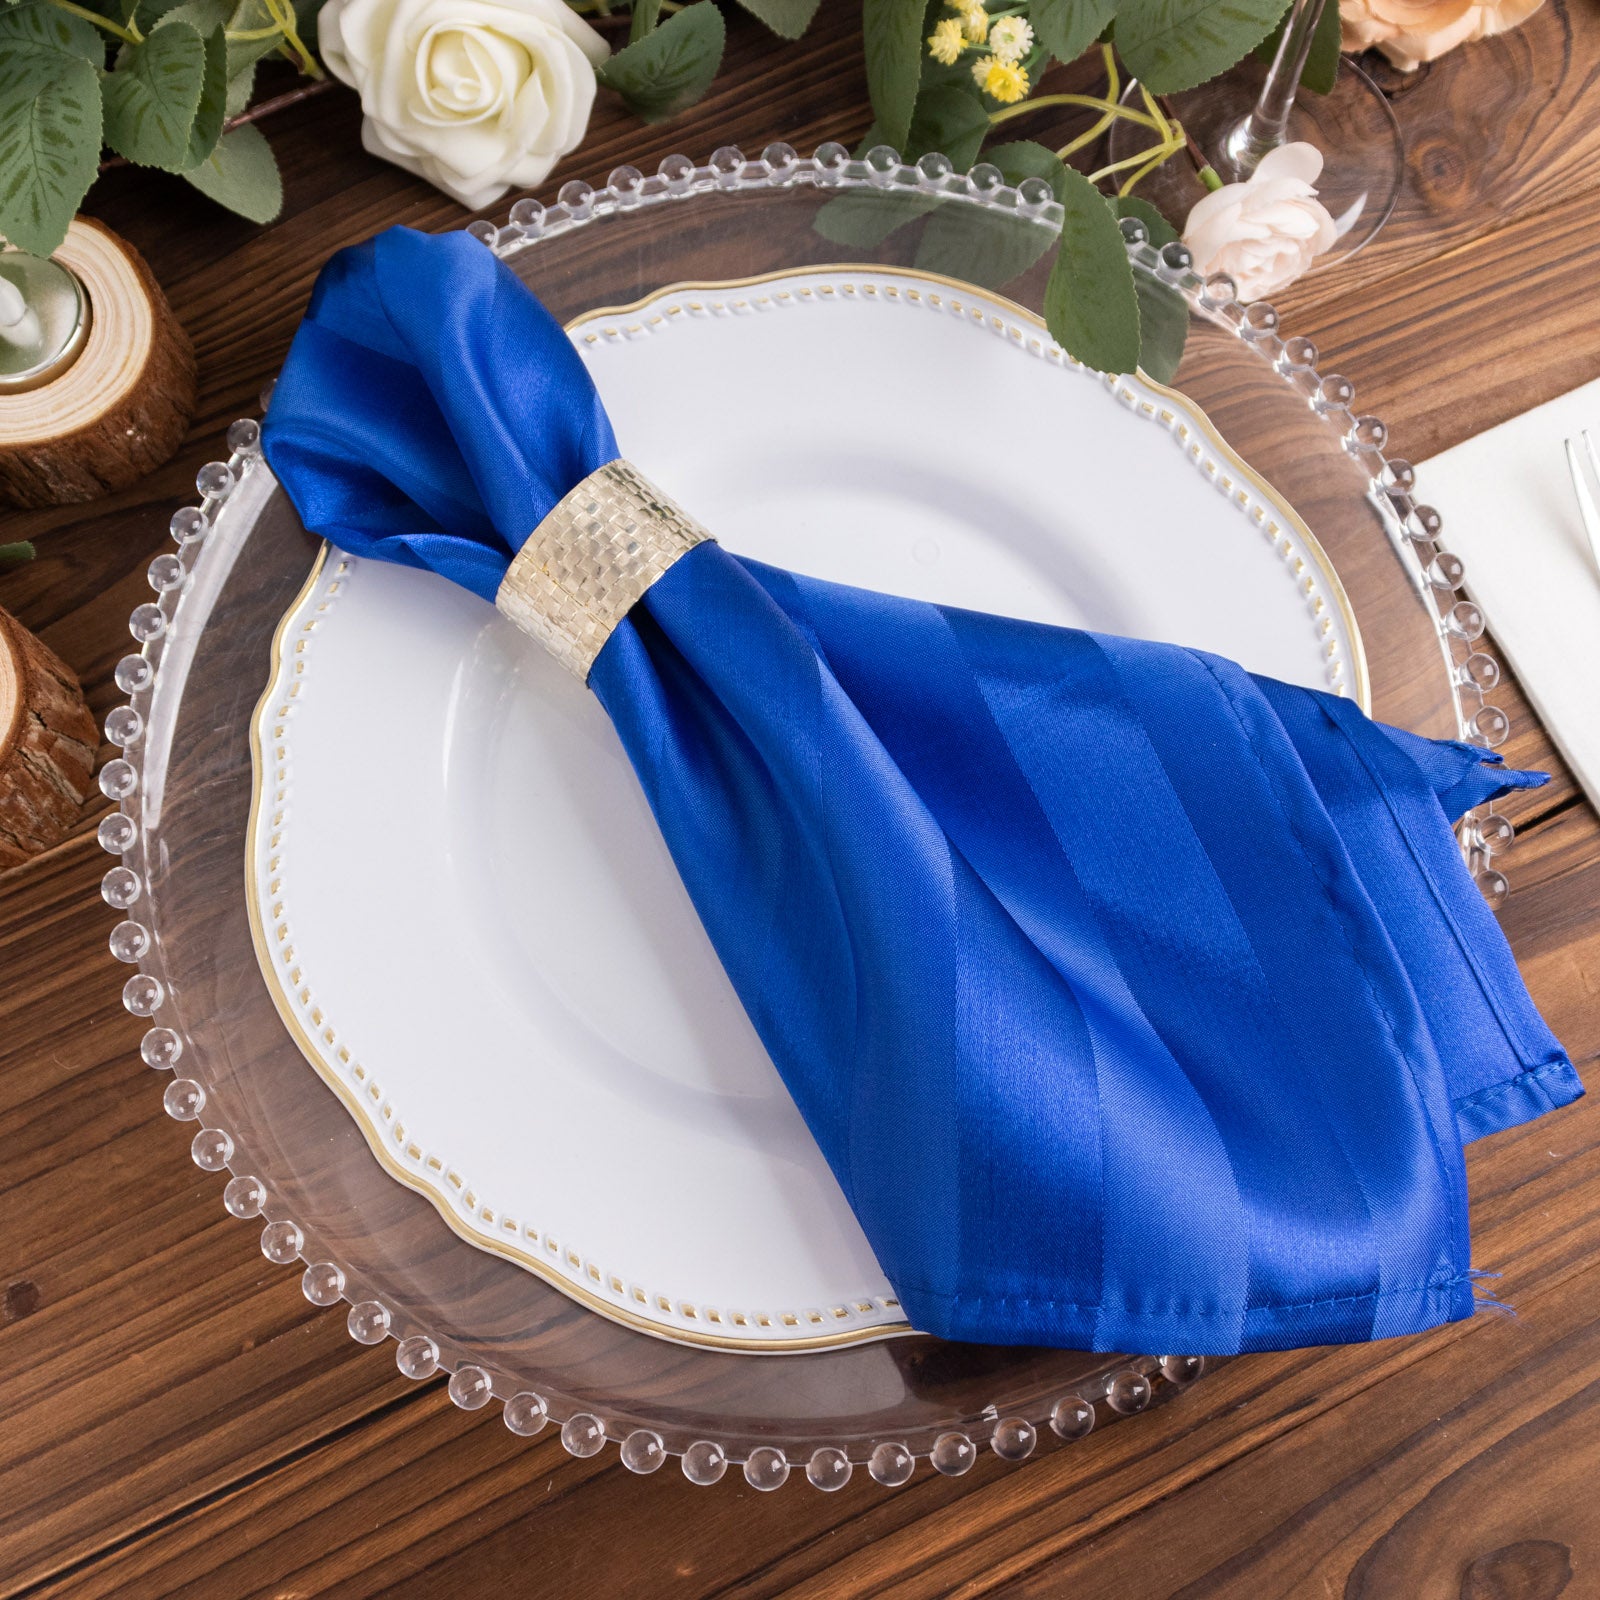 https://www.efavormart.com/cdn/shop/files/5-pack-royal-blue-striped-satin-cloth-napkins-wrinkle-free-reusable-dinner-napkins-20-20.jpg?v=1694487182